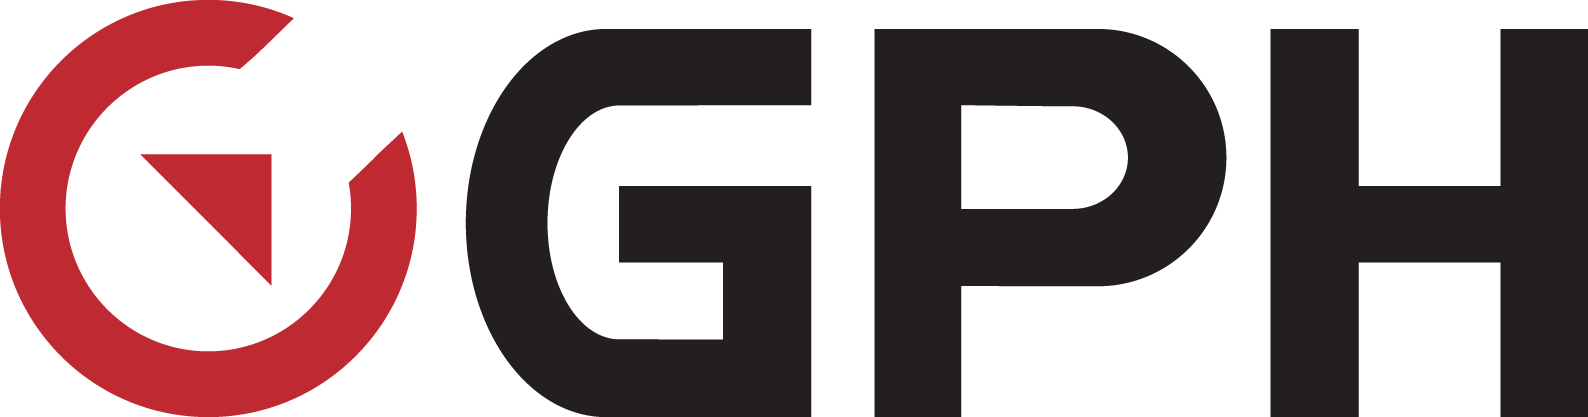 GamePark Holdings - Logo.png